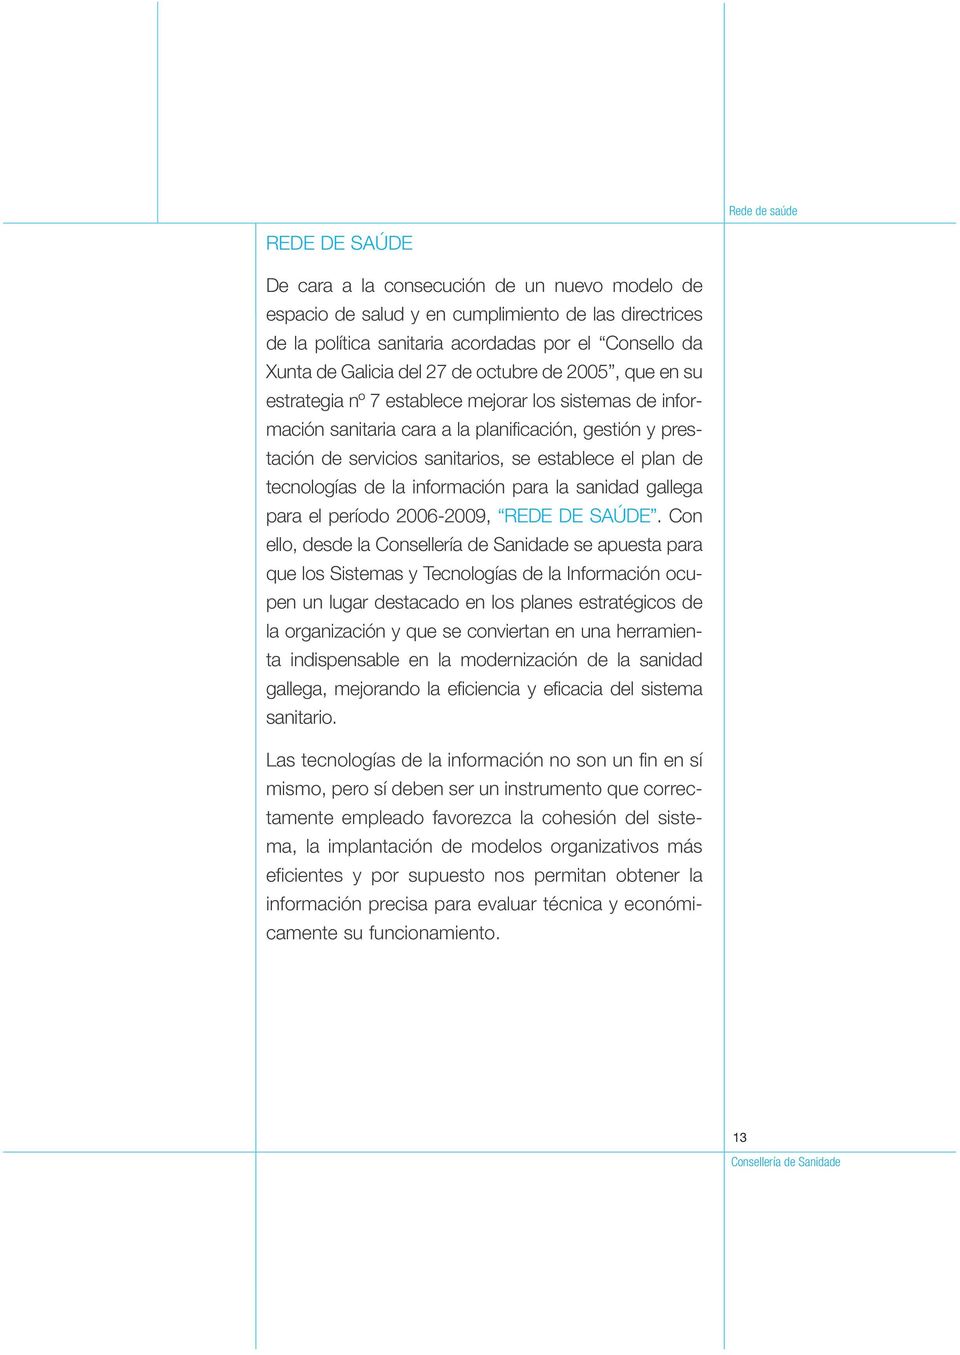 los Sistemas y Tecnologías de la Información ocu- tecnologías de la información para la sanidad gallega para el período 2006-2009, REDE DE SAÚDE.